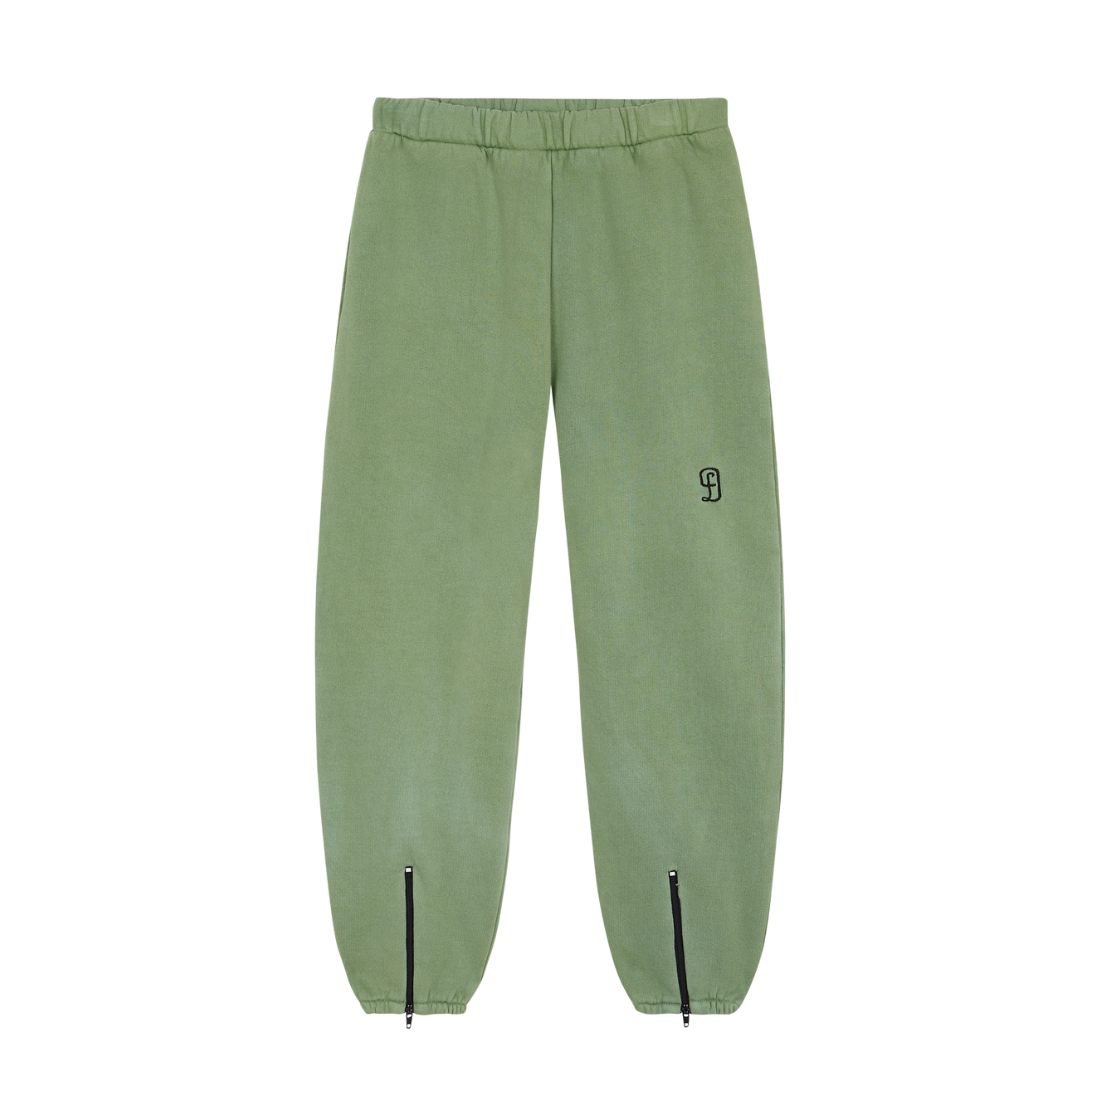 Spodnie FD green